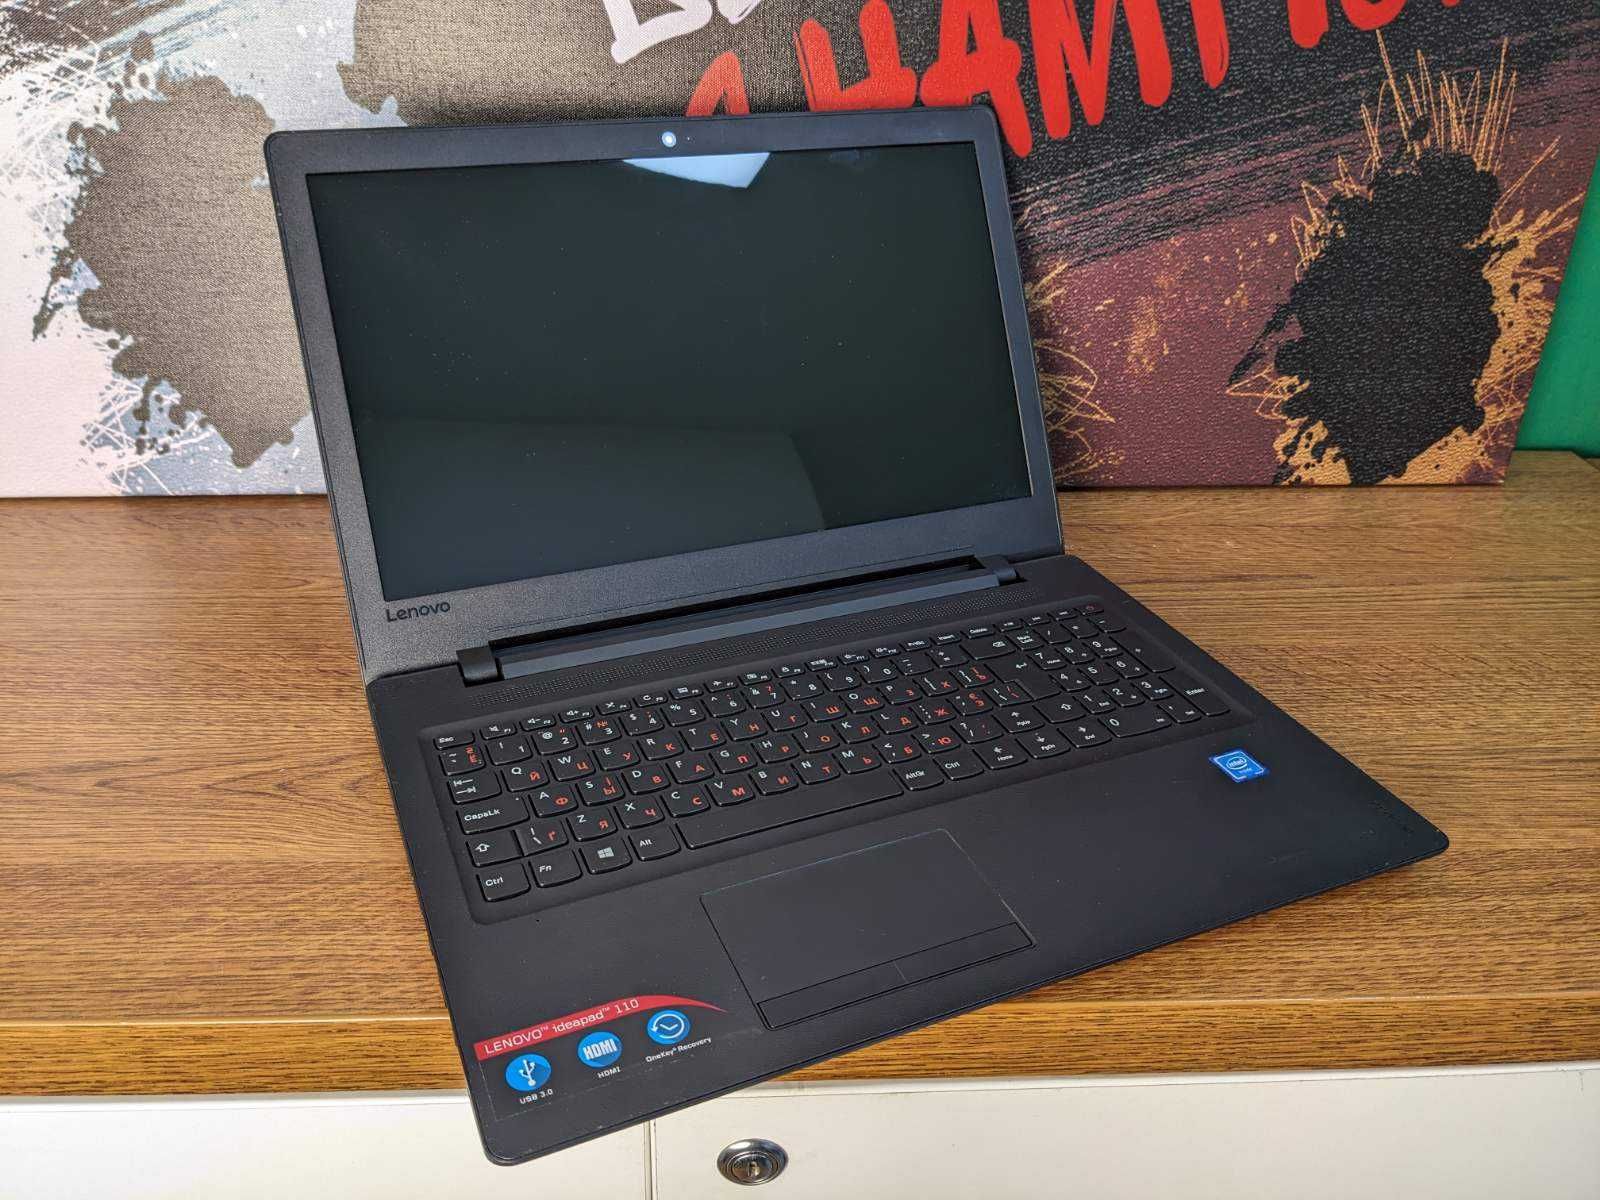 LENOVO IDEAPAD 110-15IBR - ноутбук за гарну ціну + гарантія